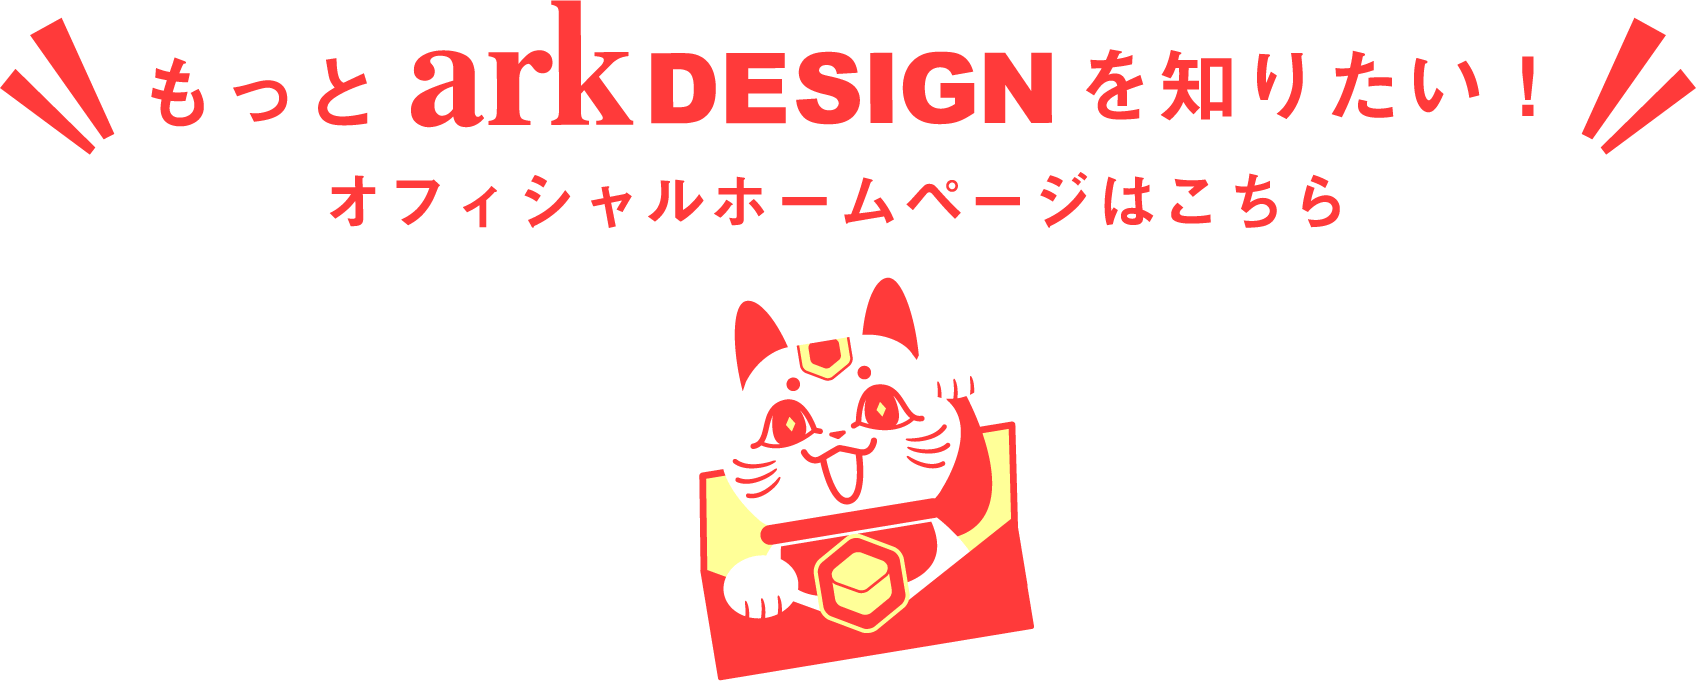 イラストやキャラクターデザインを簡単決済 デザイン会社アークデザイン